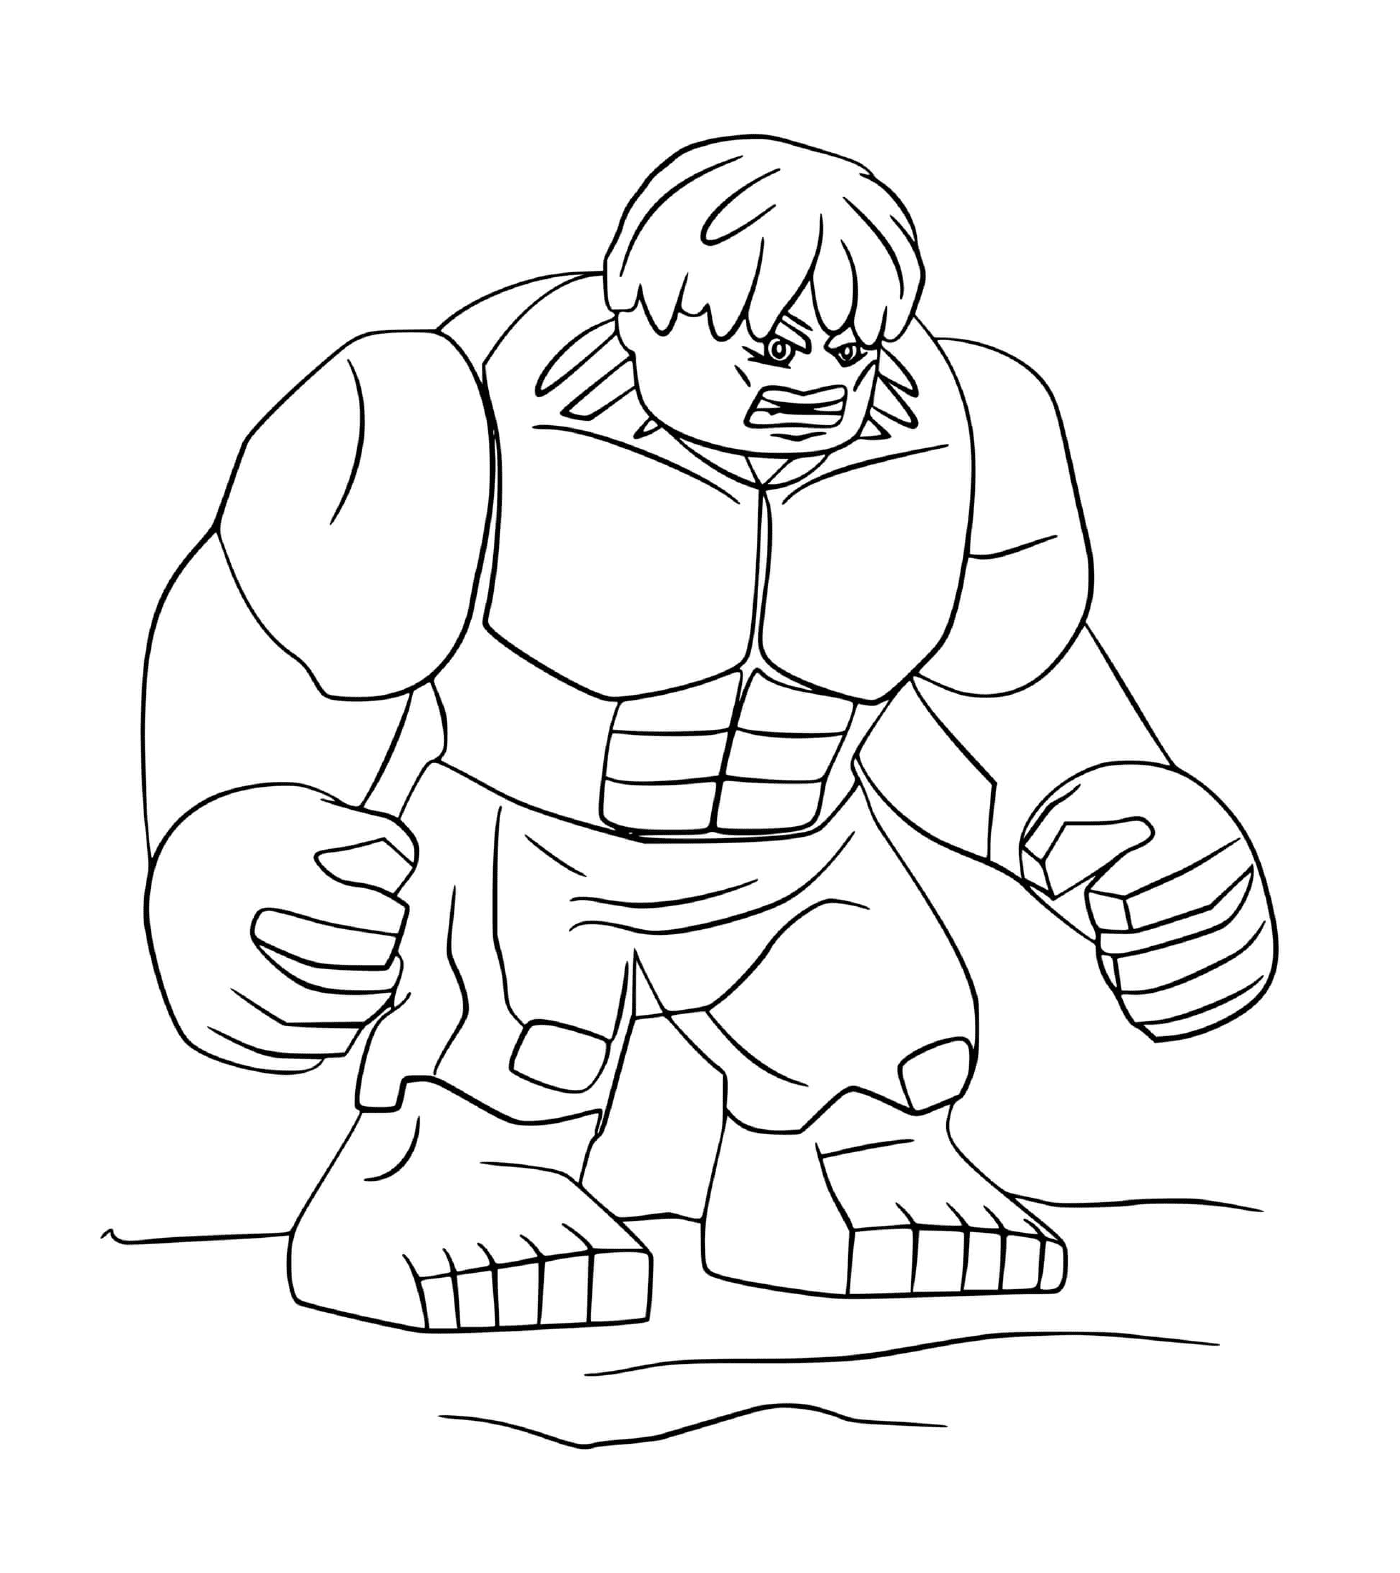  Charakter von Lego Hulk mit imposantem Körper 